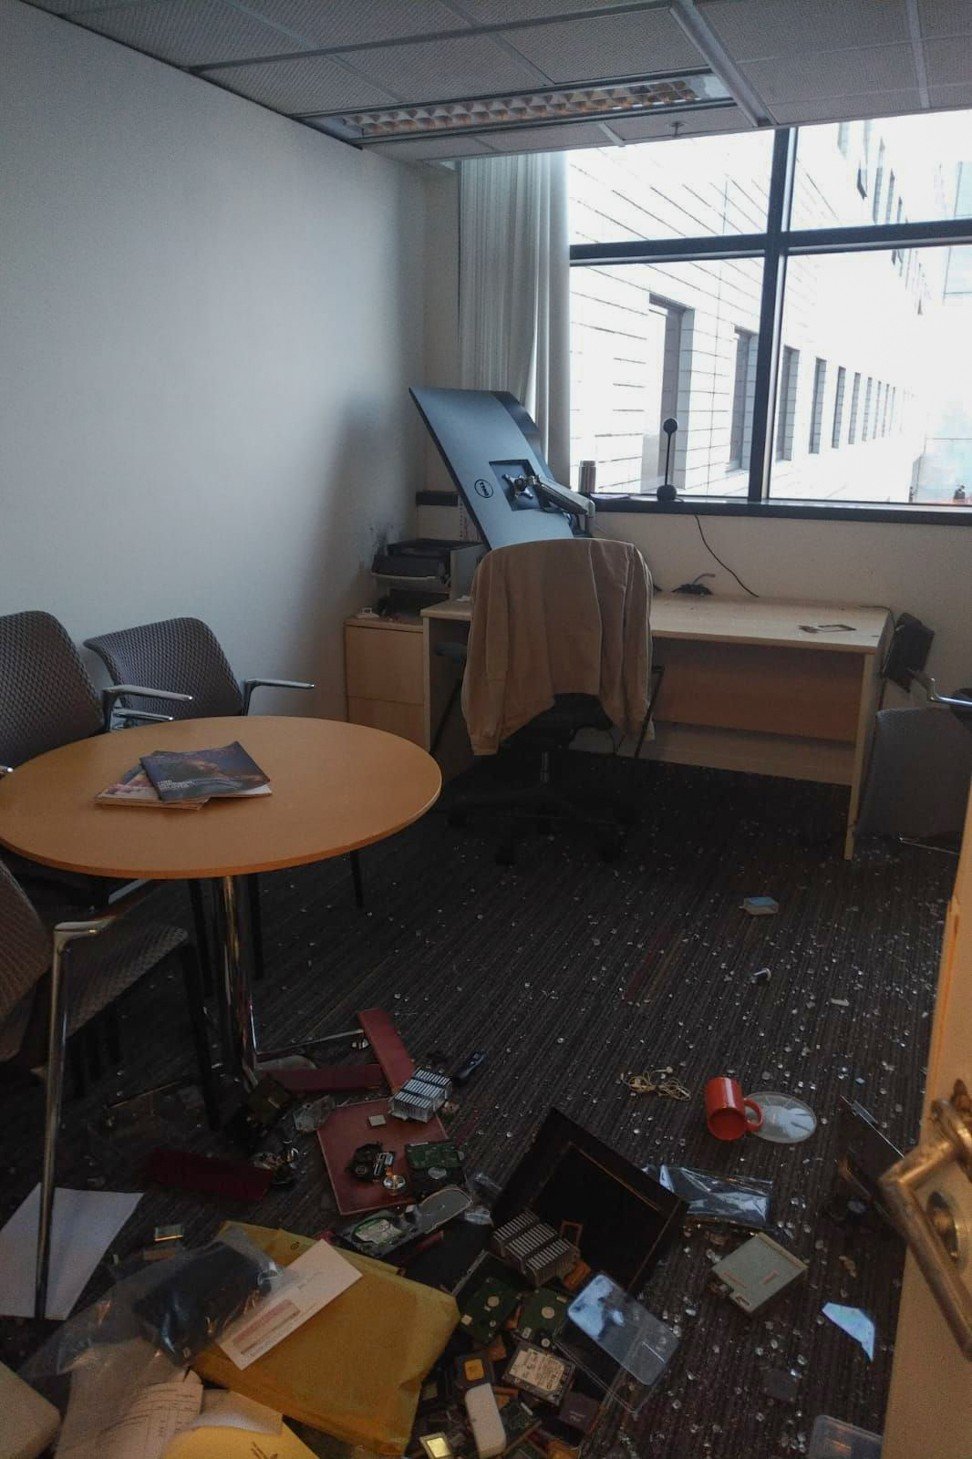 電子和計算機工程系的一名大陸人教授徐江教授的辦公室上周五遭到暴力抗議者的毆打。照片：徐江